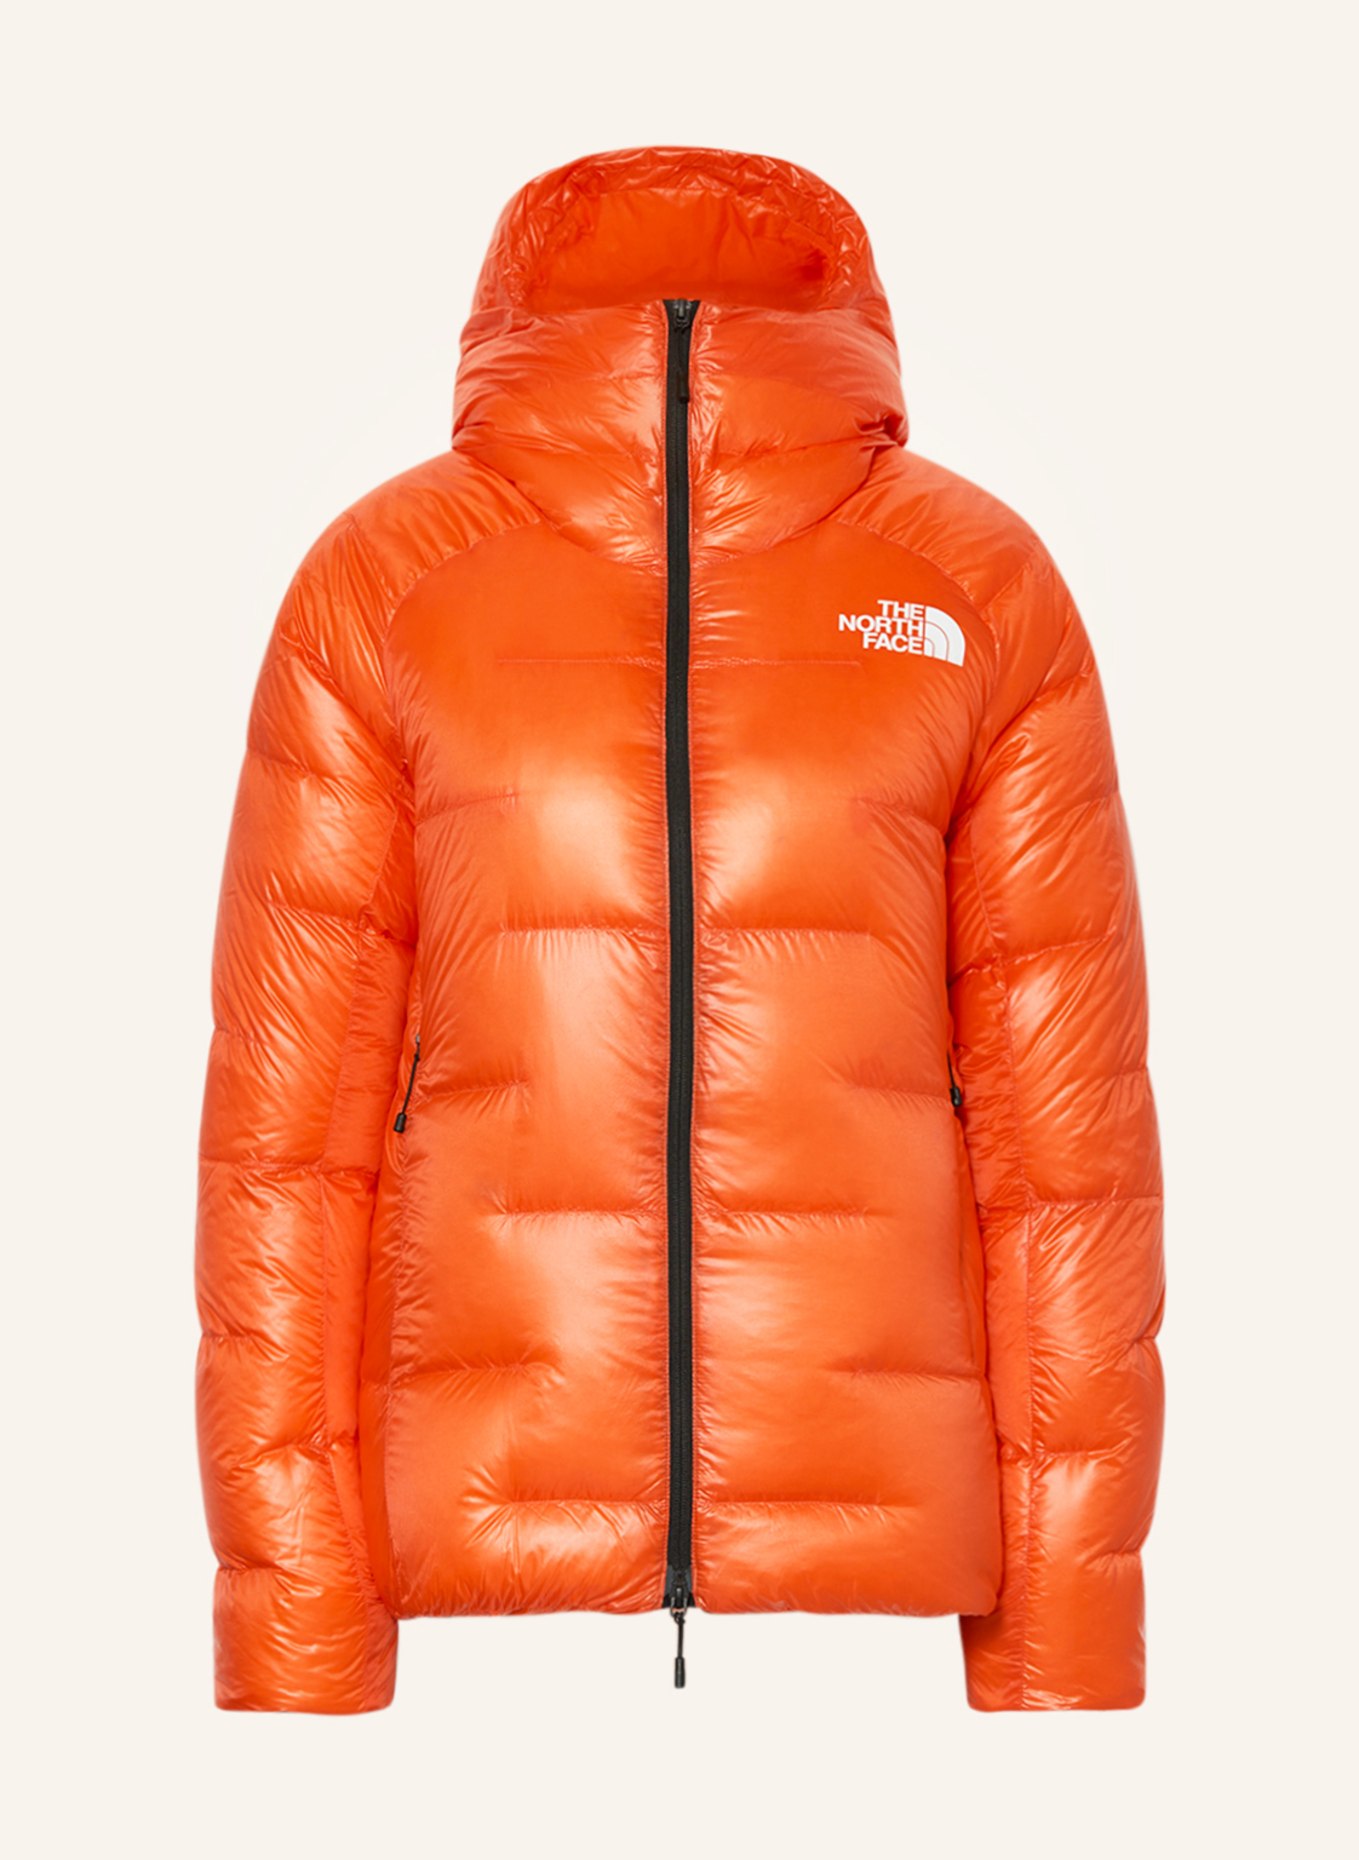 THE NORTH FACE Lightweight SUMMIT in jacket down PUMORI orange